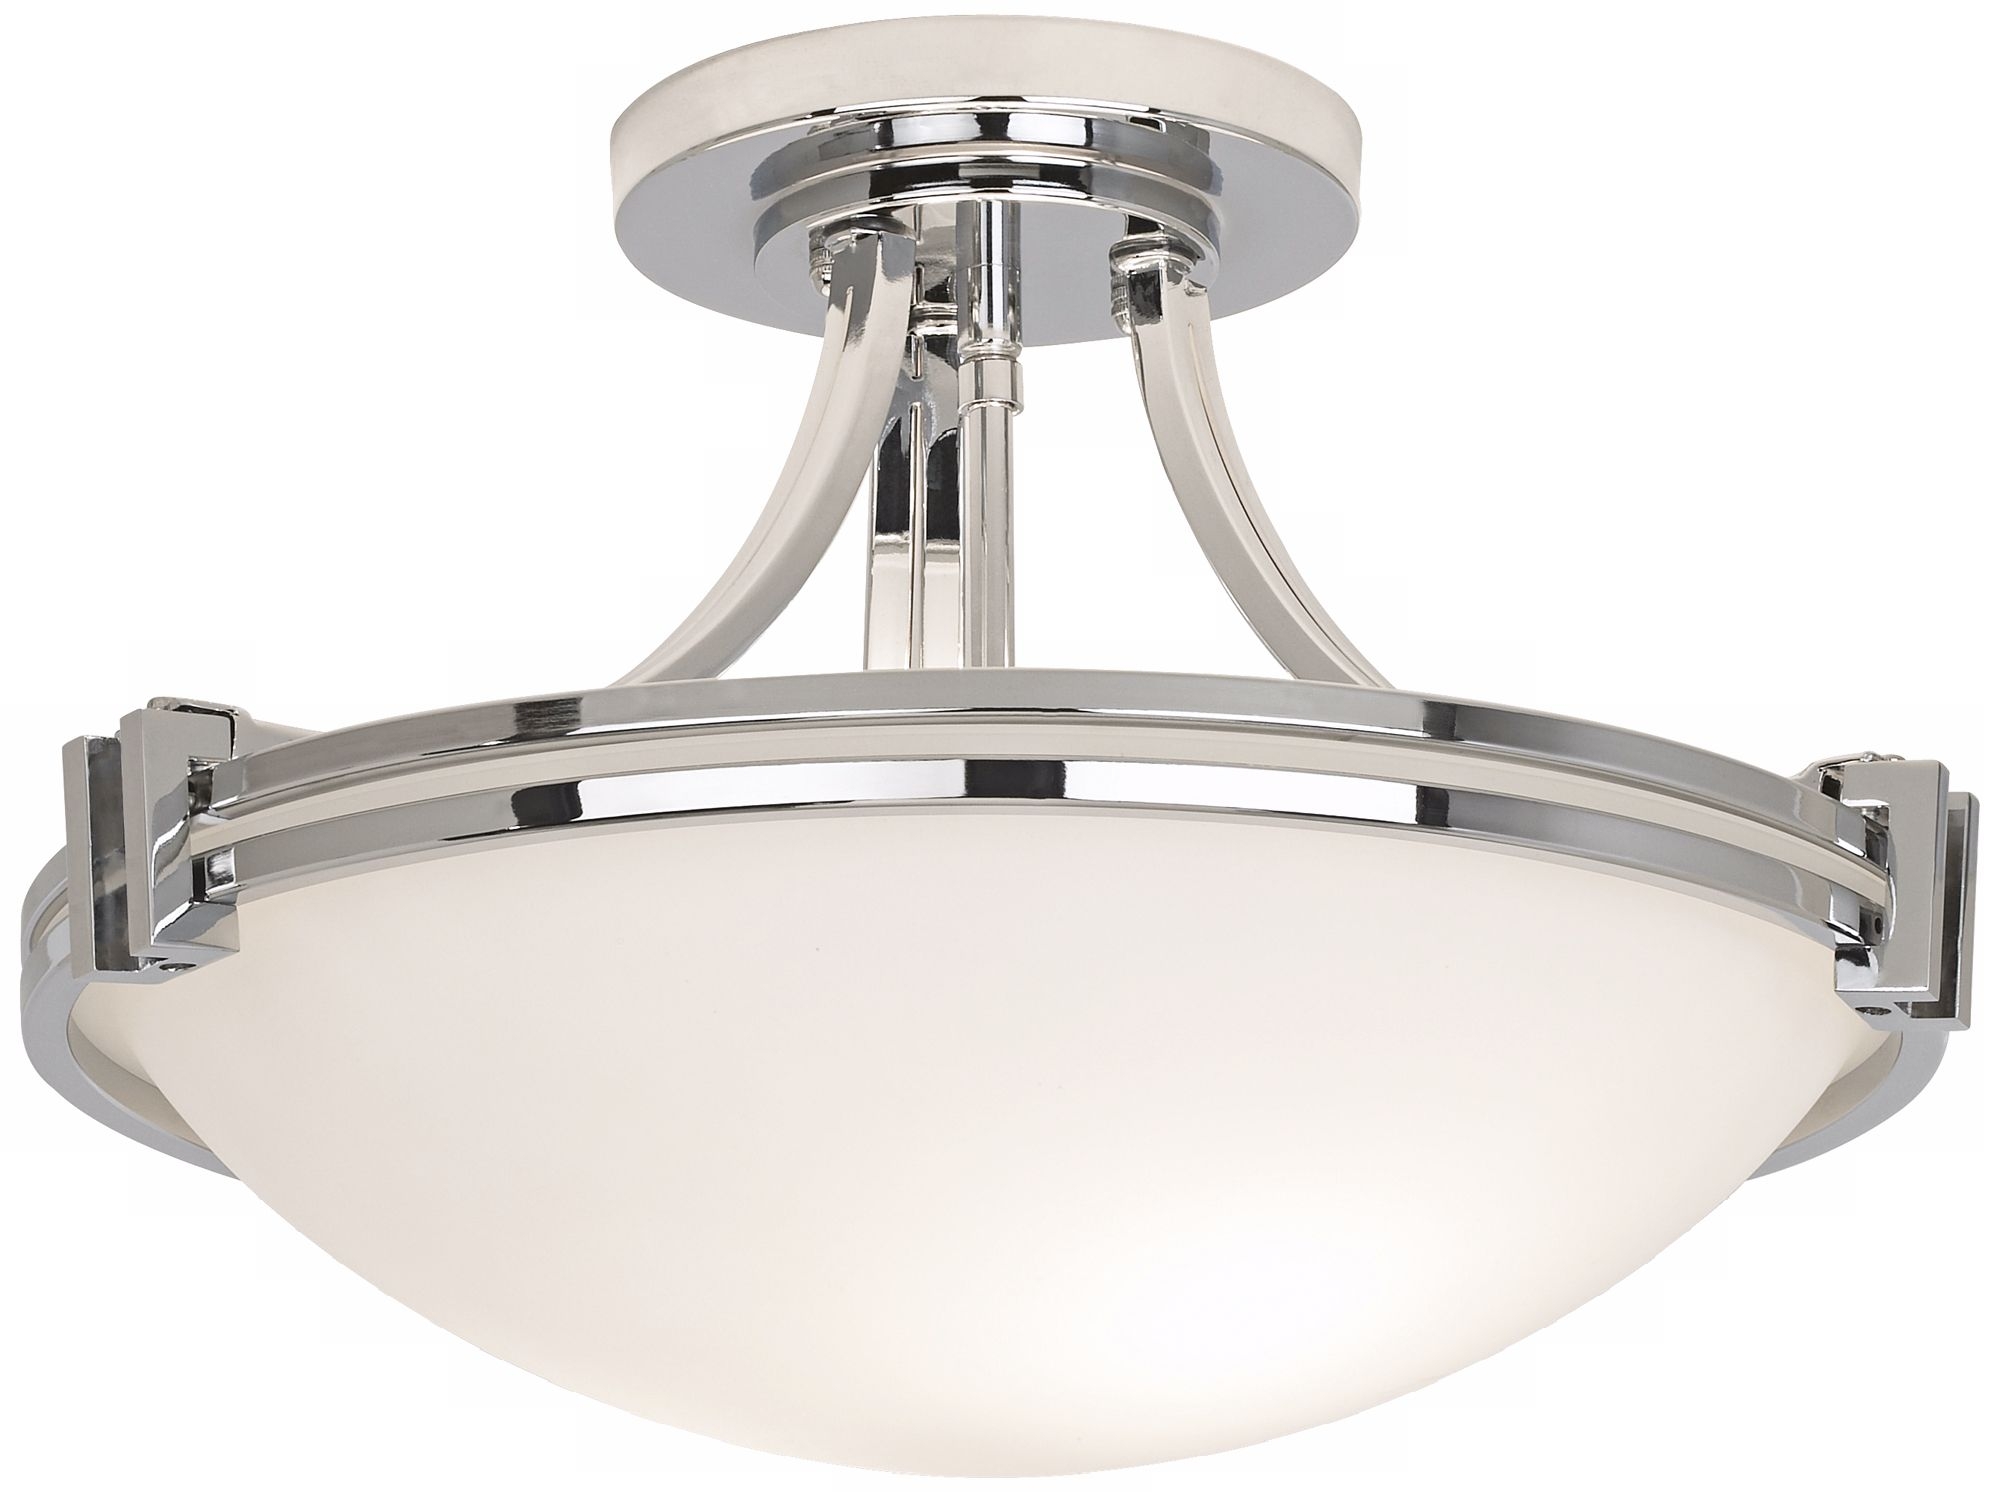 Possini Euro Design Ceiling Light Fixture - Image 0